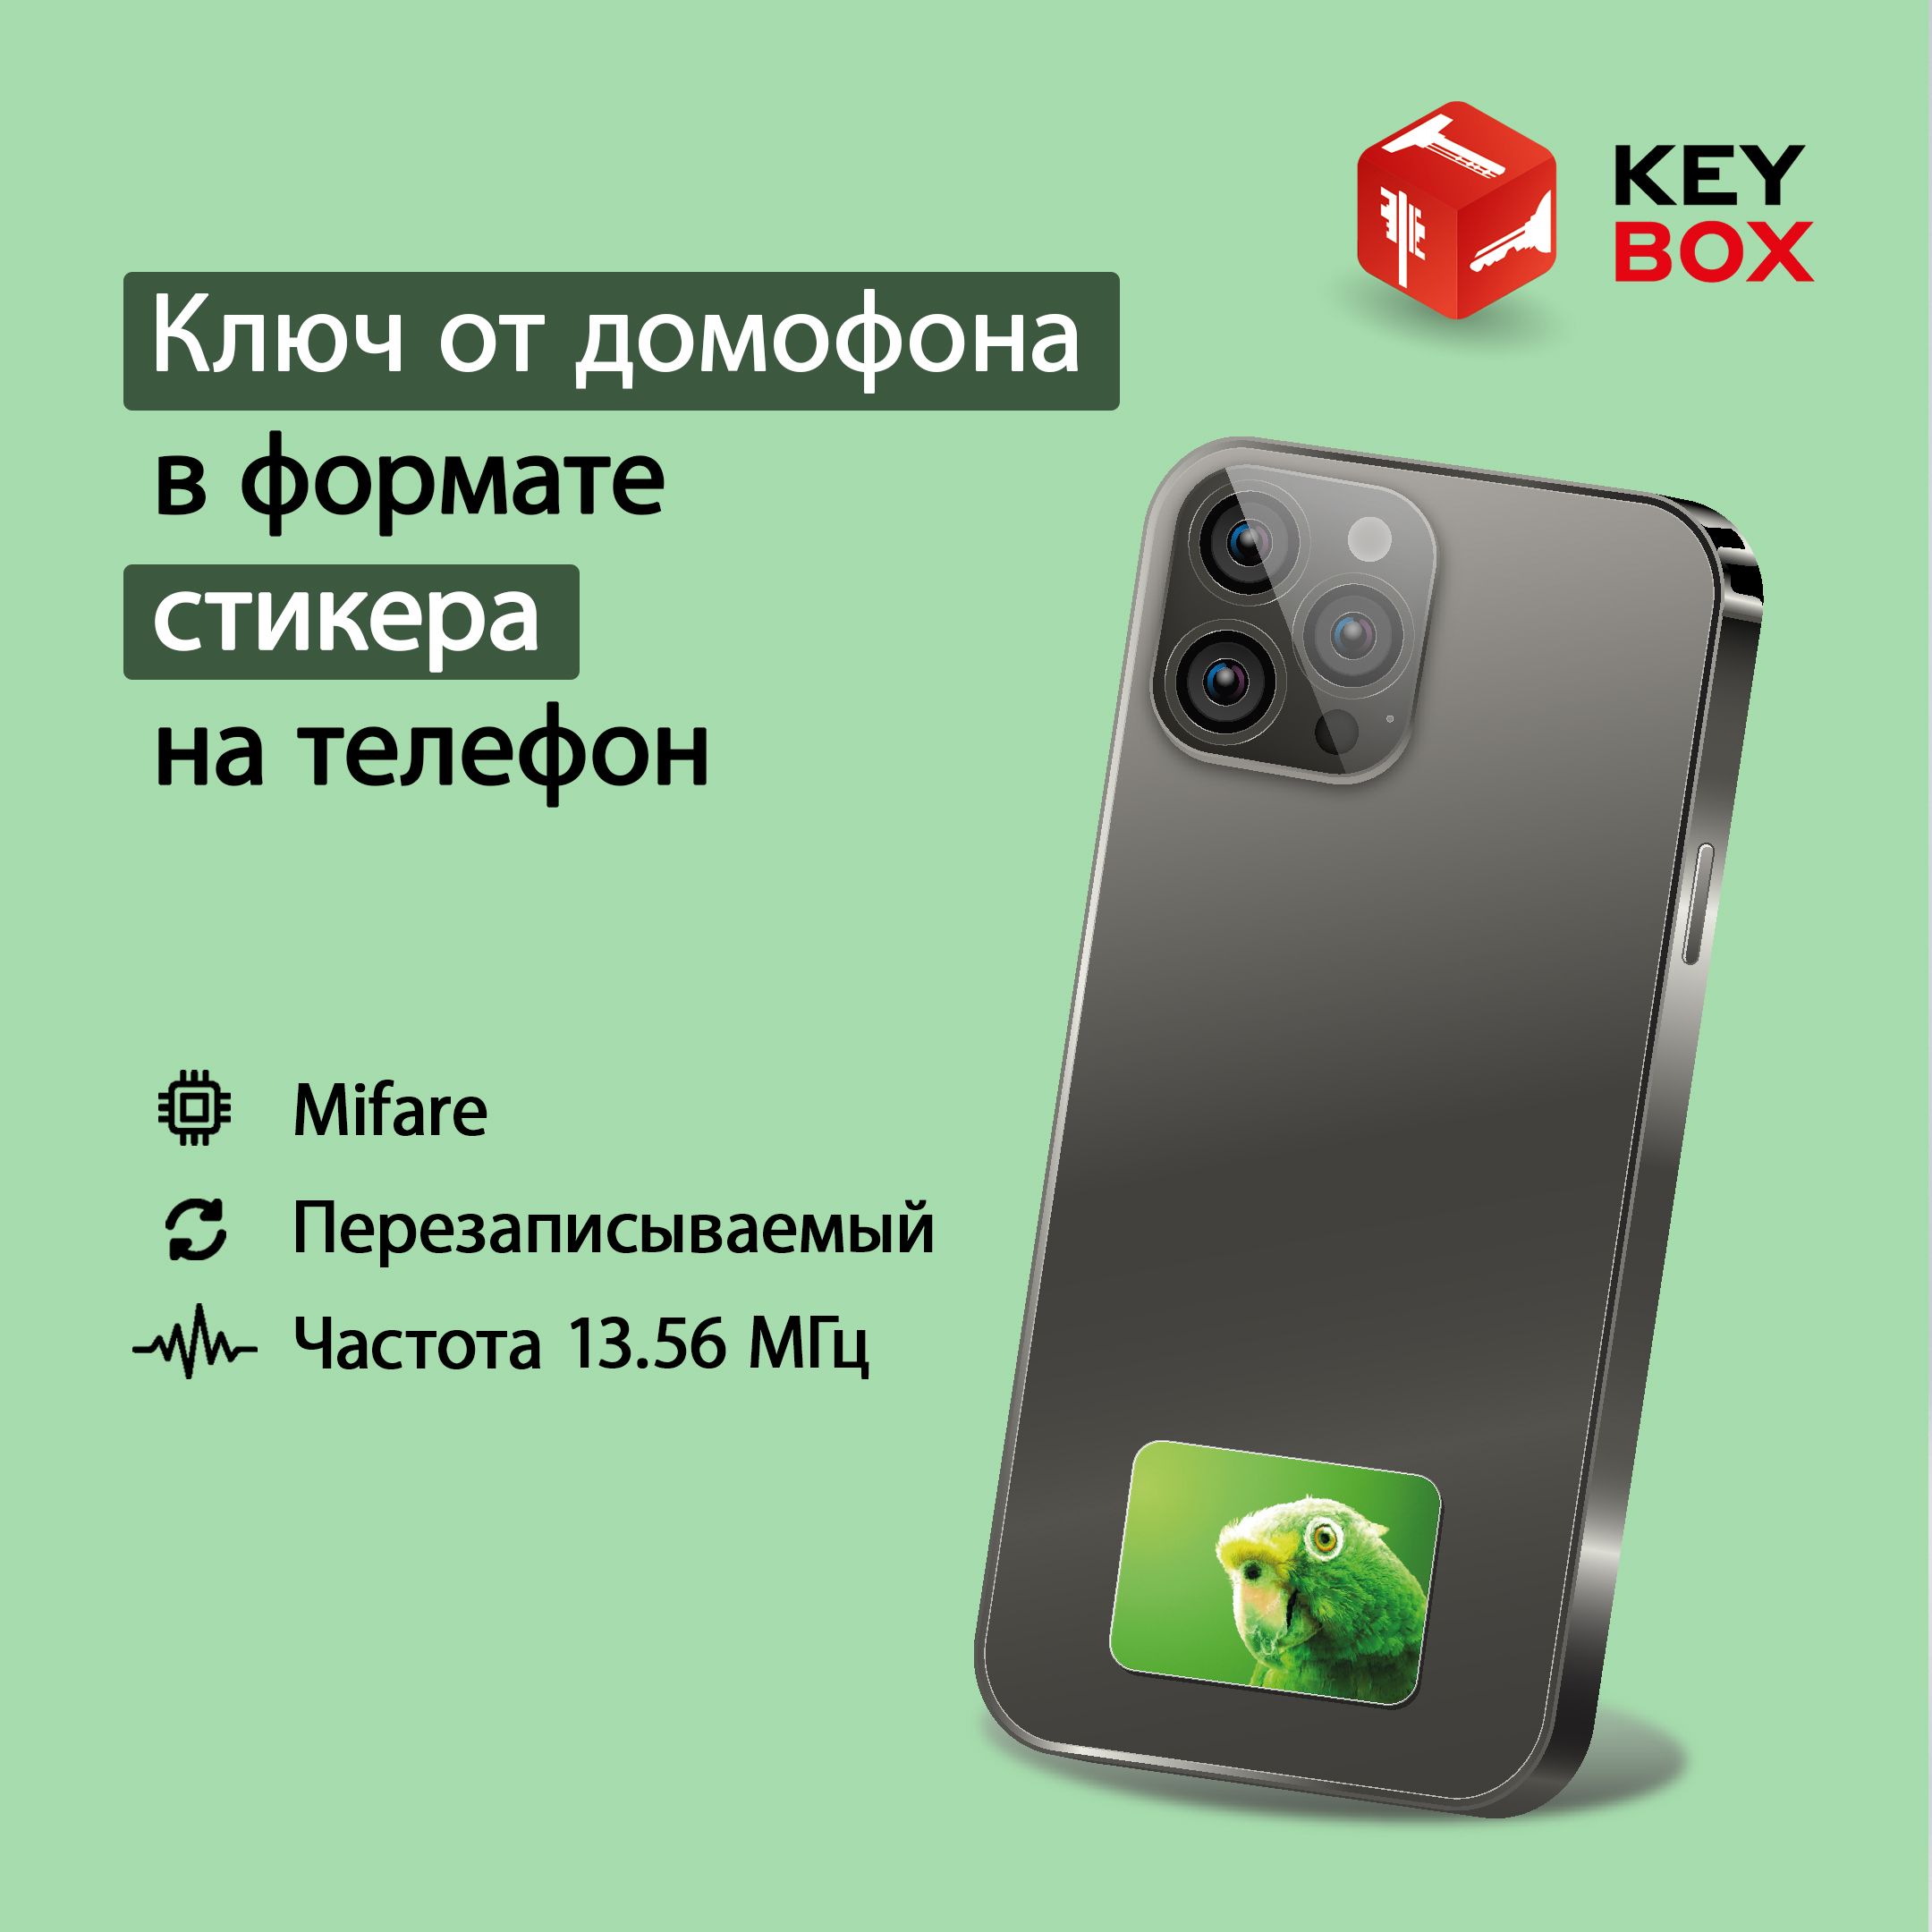 Ключ-стикер для домофона на телефон Keybox Mifare St011, Попугай музыкальный телефон